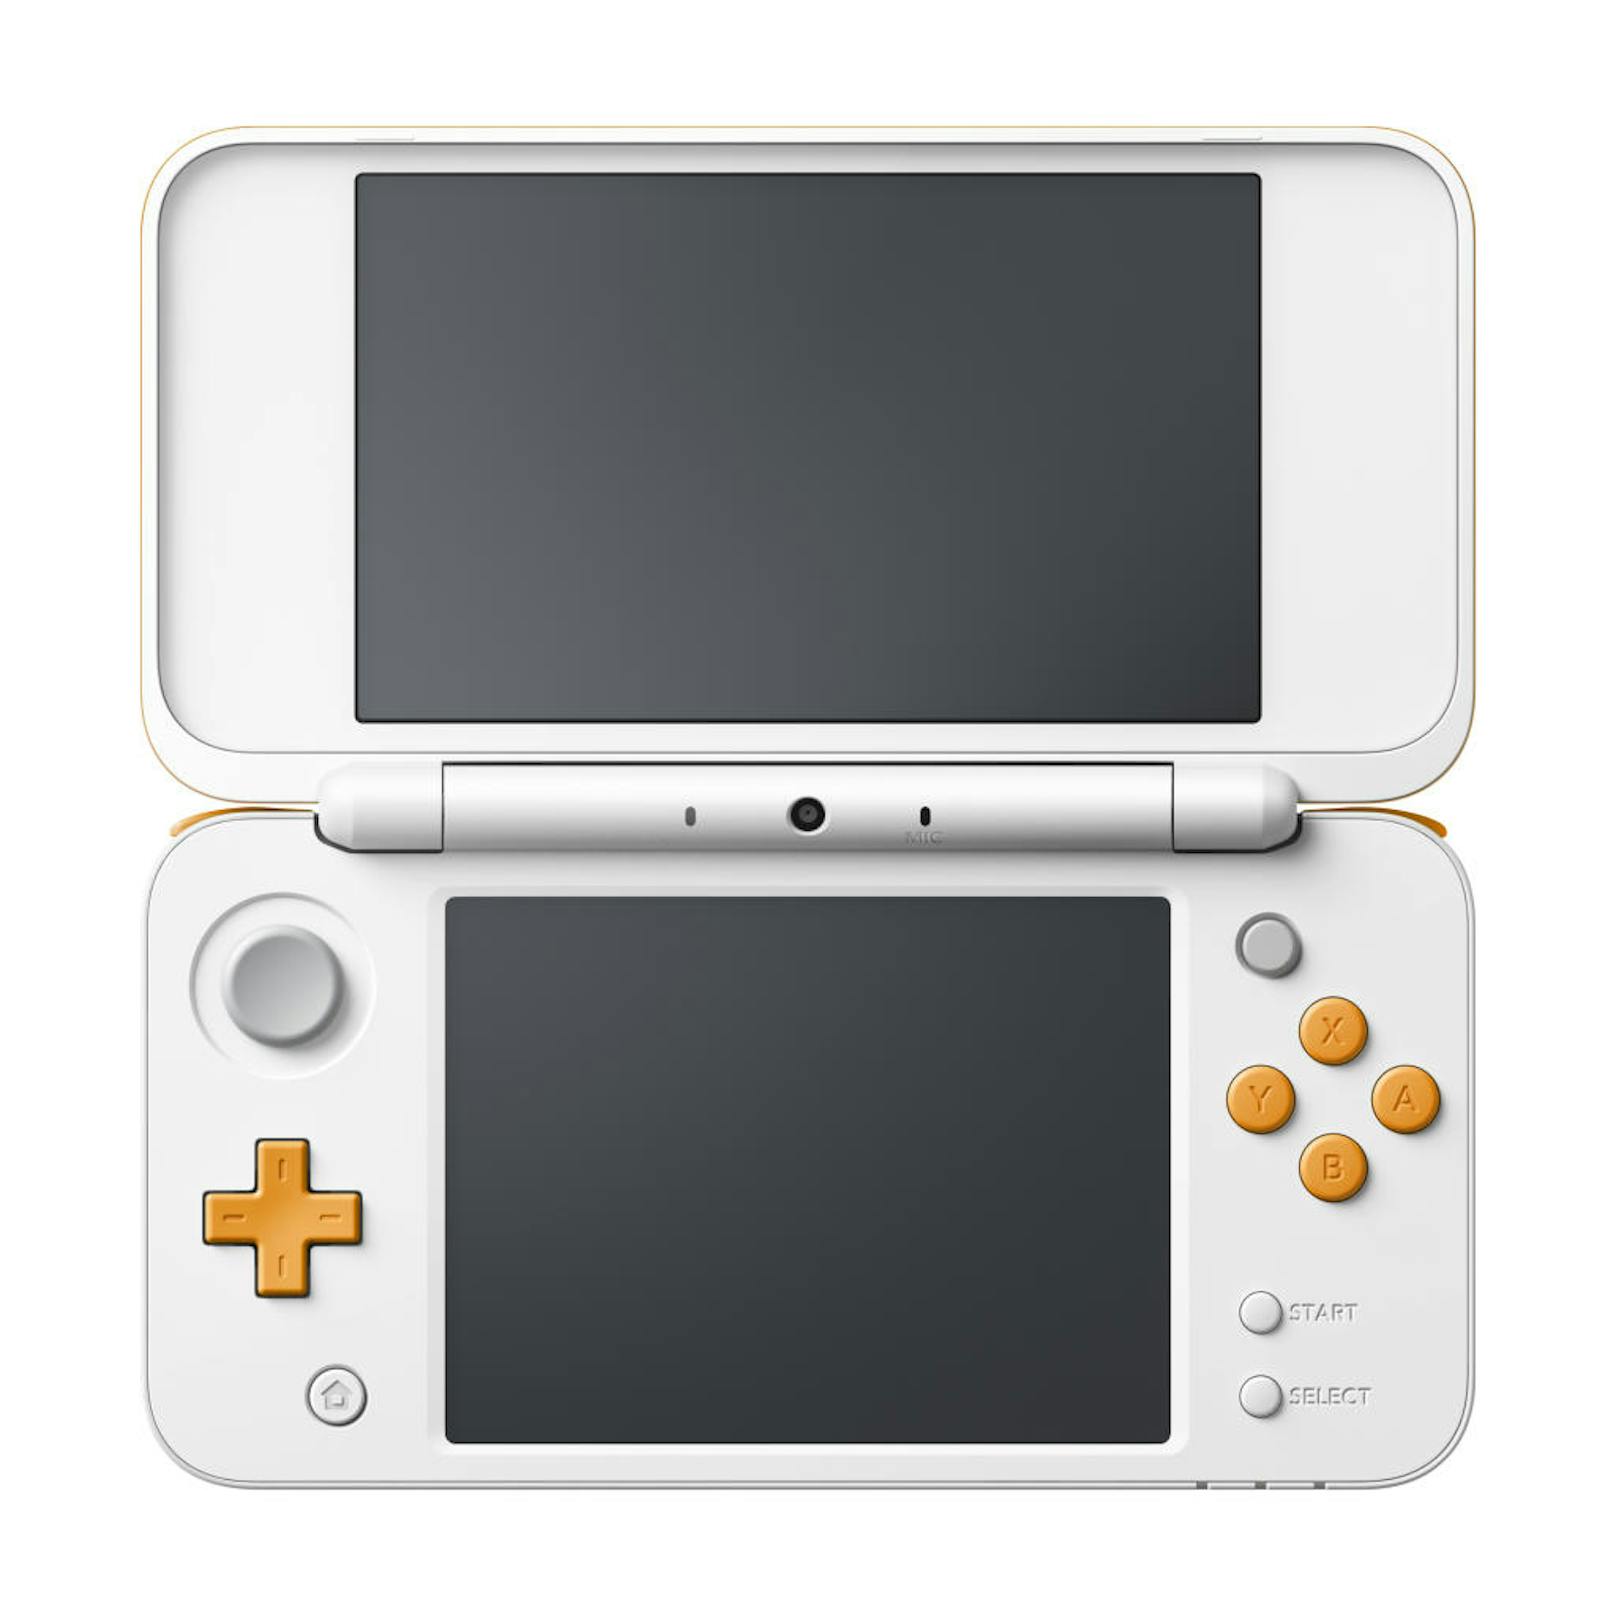 er neue 2DS XL präsentiert sich zwar ohne 3D, aber mit einem Chip, der alle 3DS-Spiele trotzdem problemlos abspielen kann. Neu sind in der 2er-Baureihe der C-Stick rechts und die beiden zusätzlichen Schultertasten (ZL/ZR).